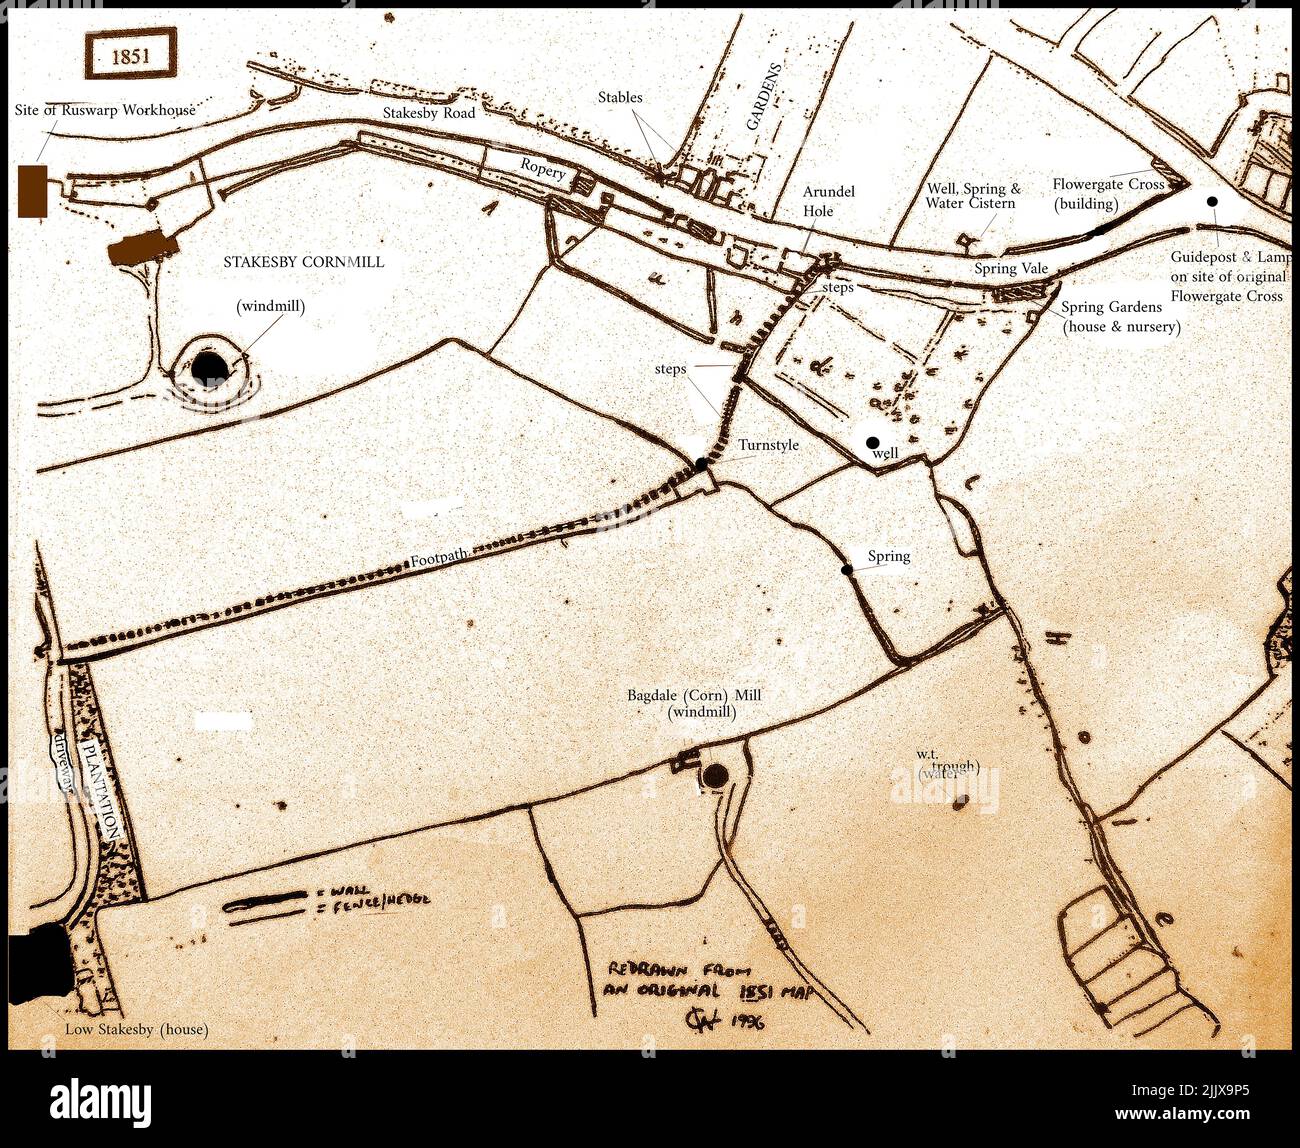 Une copie d'une carte de 1851 des champs de Stakesby et de la région de Bagdale, Whitby, N Yorkshire. Banque D'Images